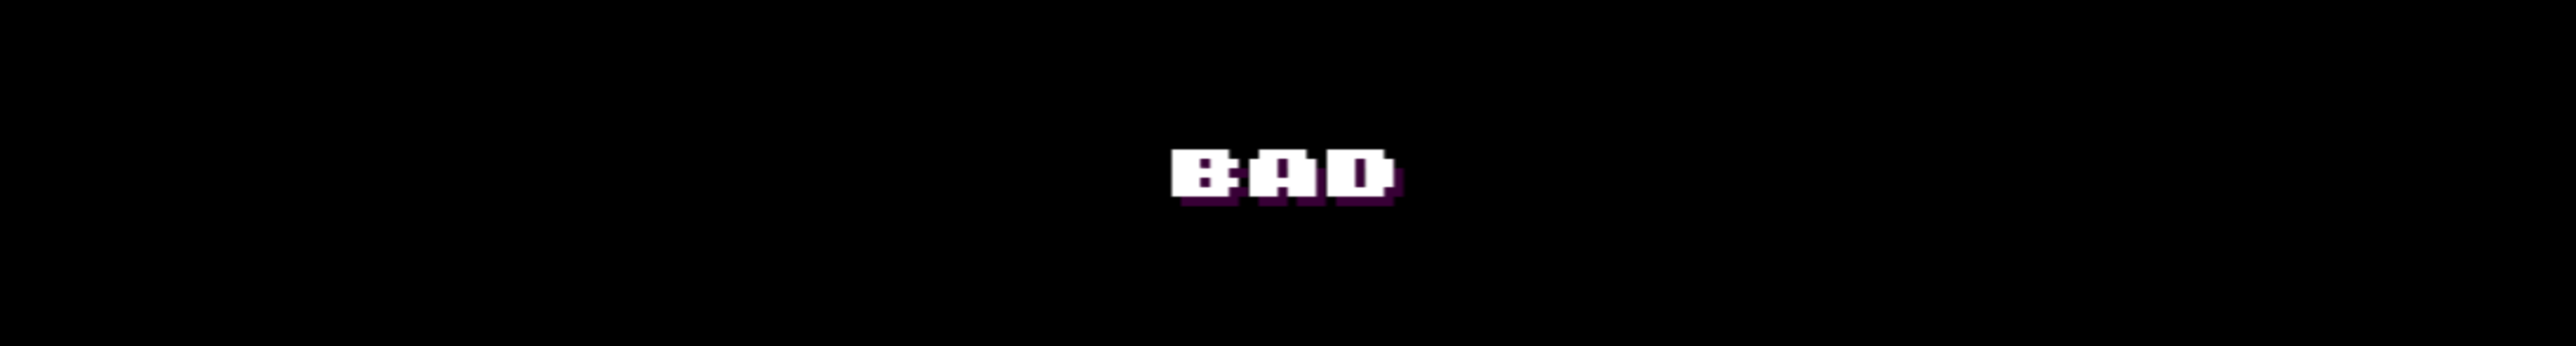 bad